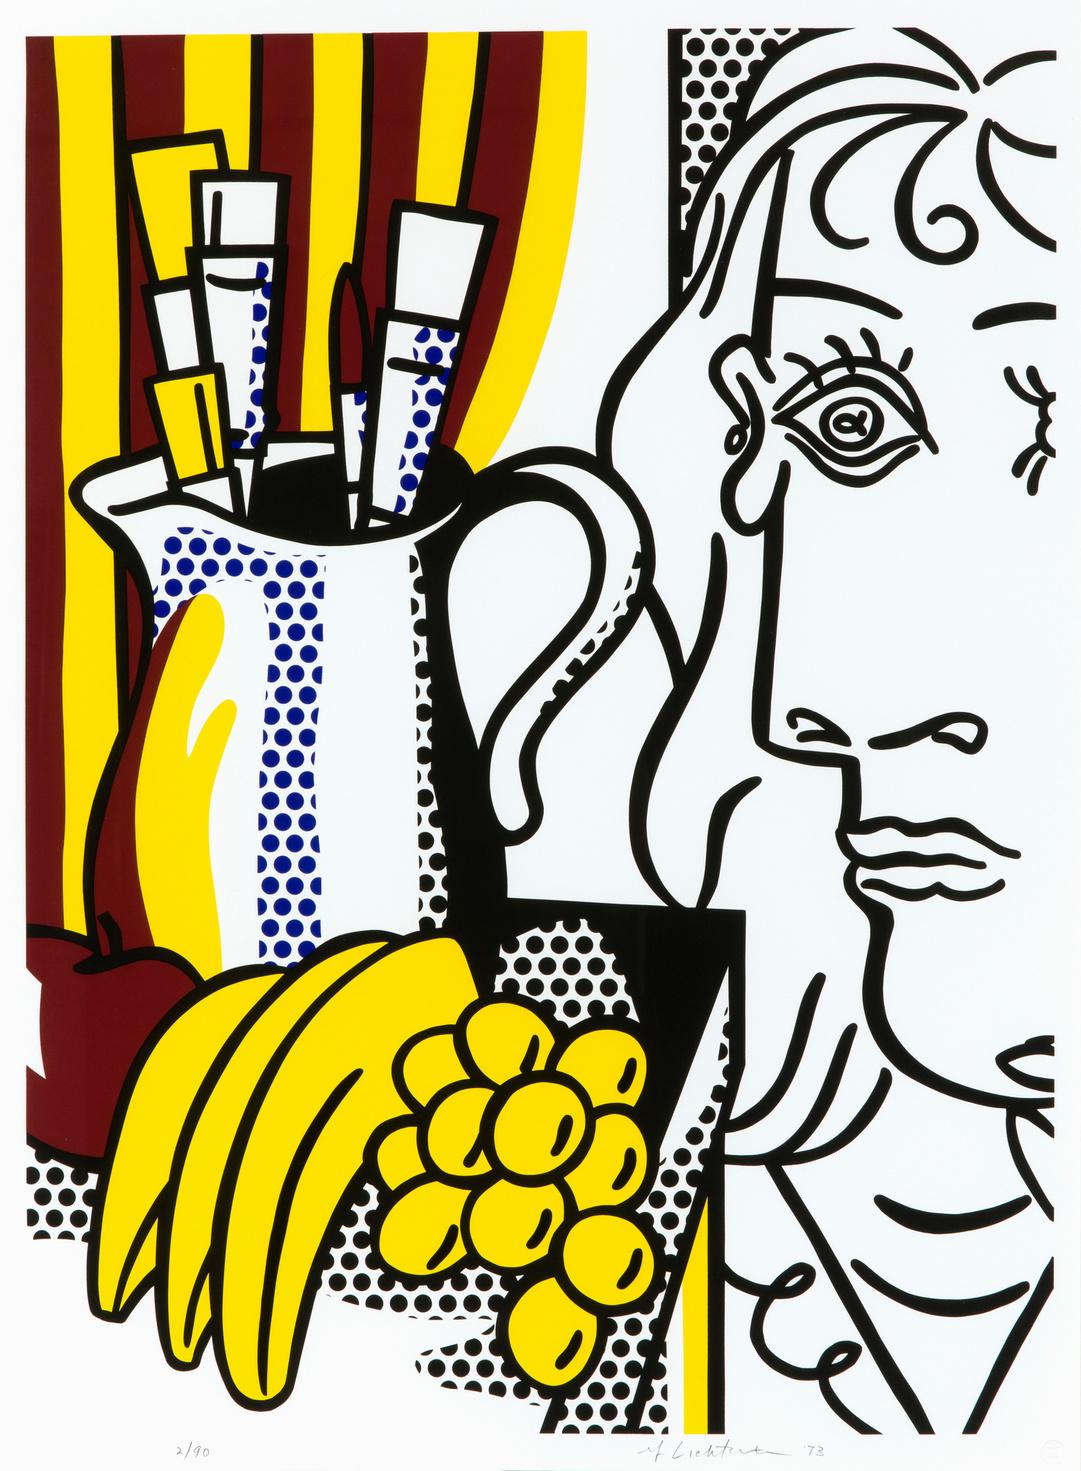 Roy Lichtenstein, Still life with Picasso, 1973